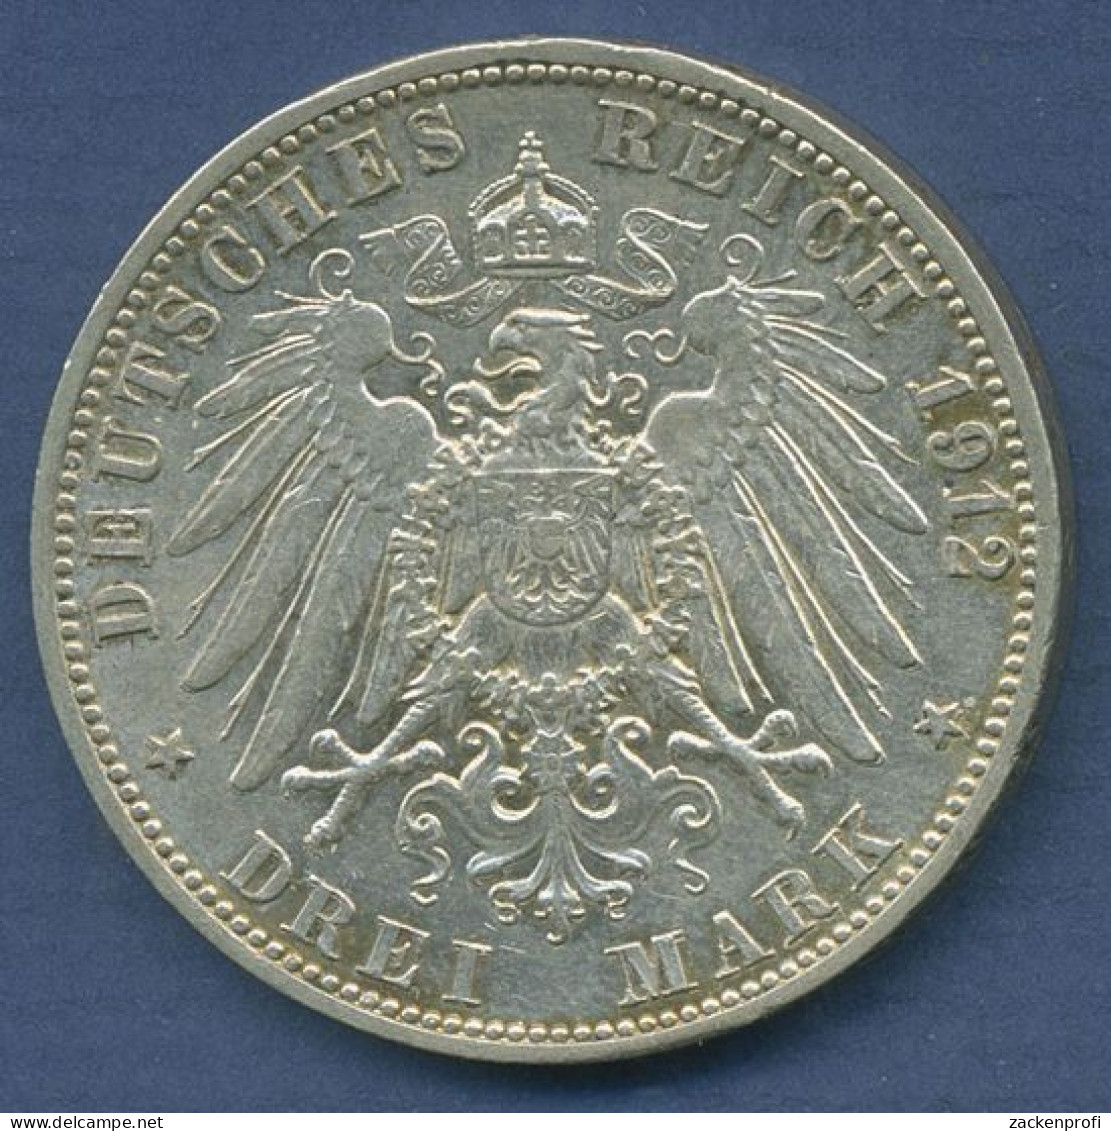 Baden 3 Mark 1912 G, Großherzog Friedrich II., J 39 Vz/vz+ (m6274) - 2, 3 & 5 Mark Argent